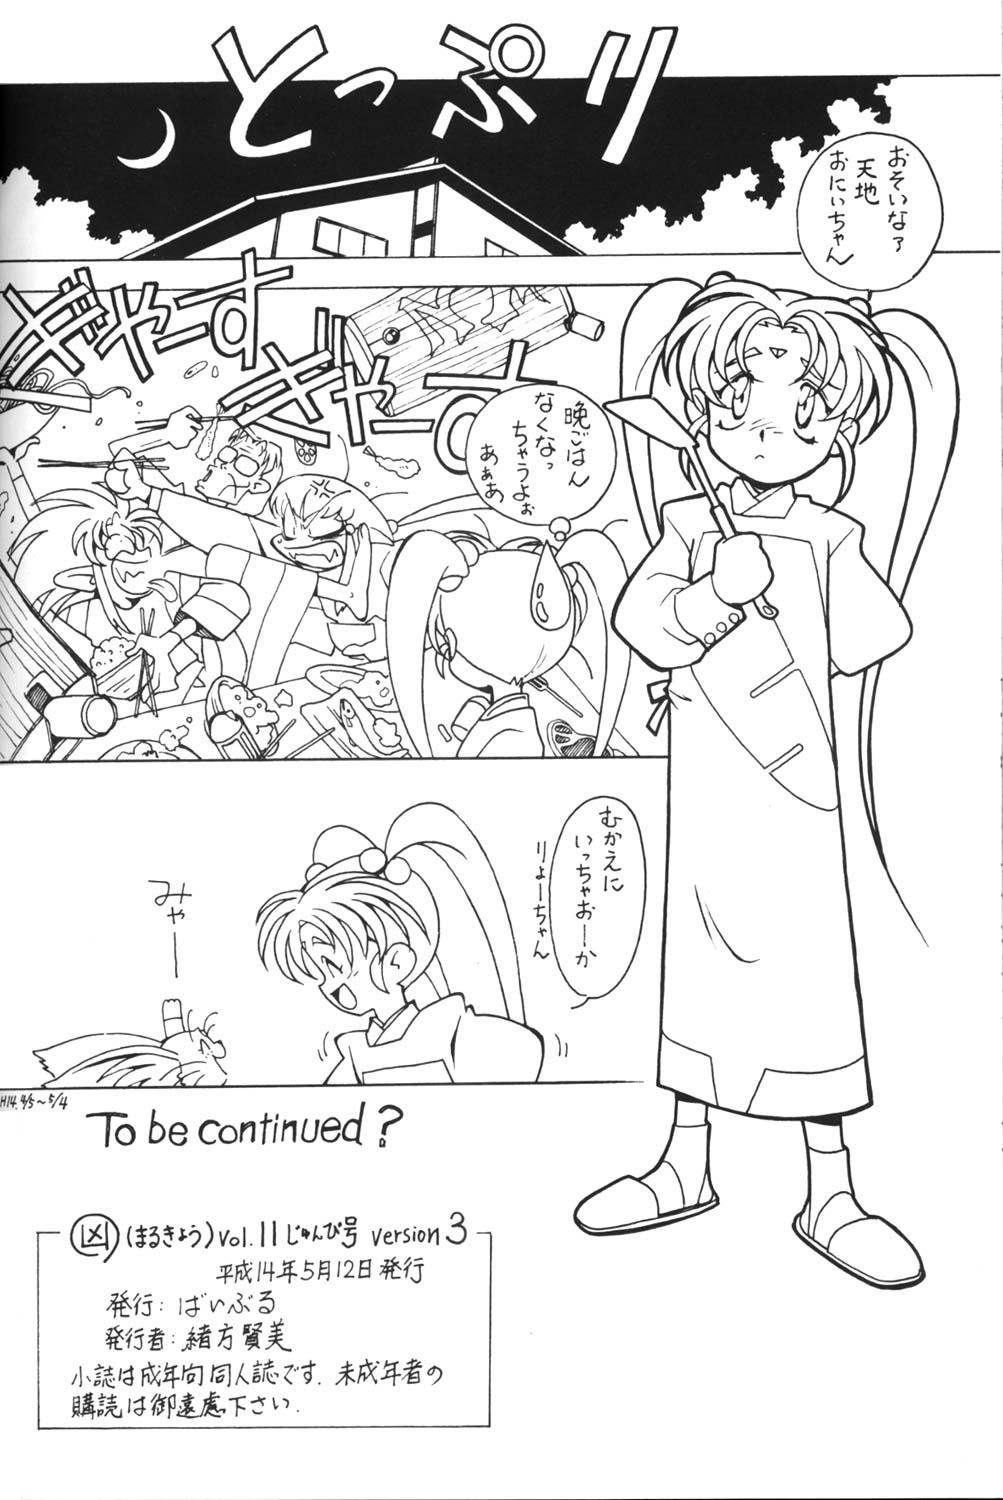 Mulher Kyouakuteki Shidou Vol. 11 Junbigou Version 3 - Tenchi muyo Forbidden - Page 21